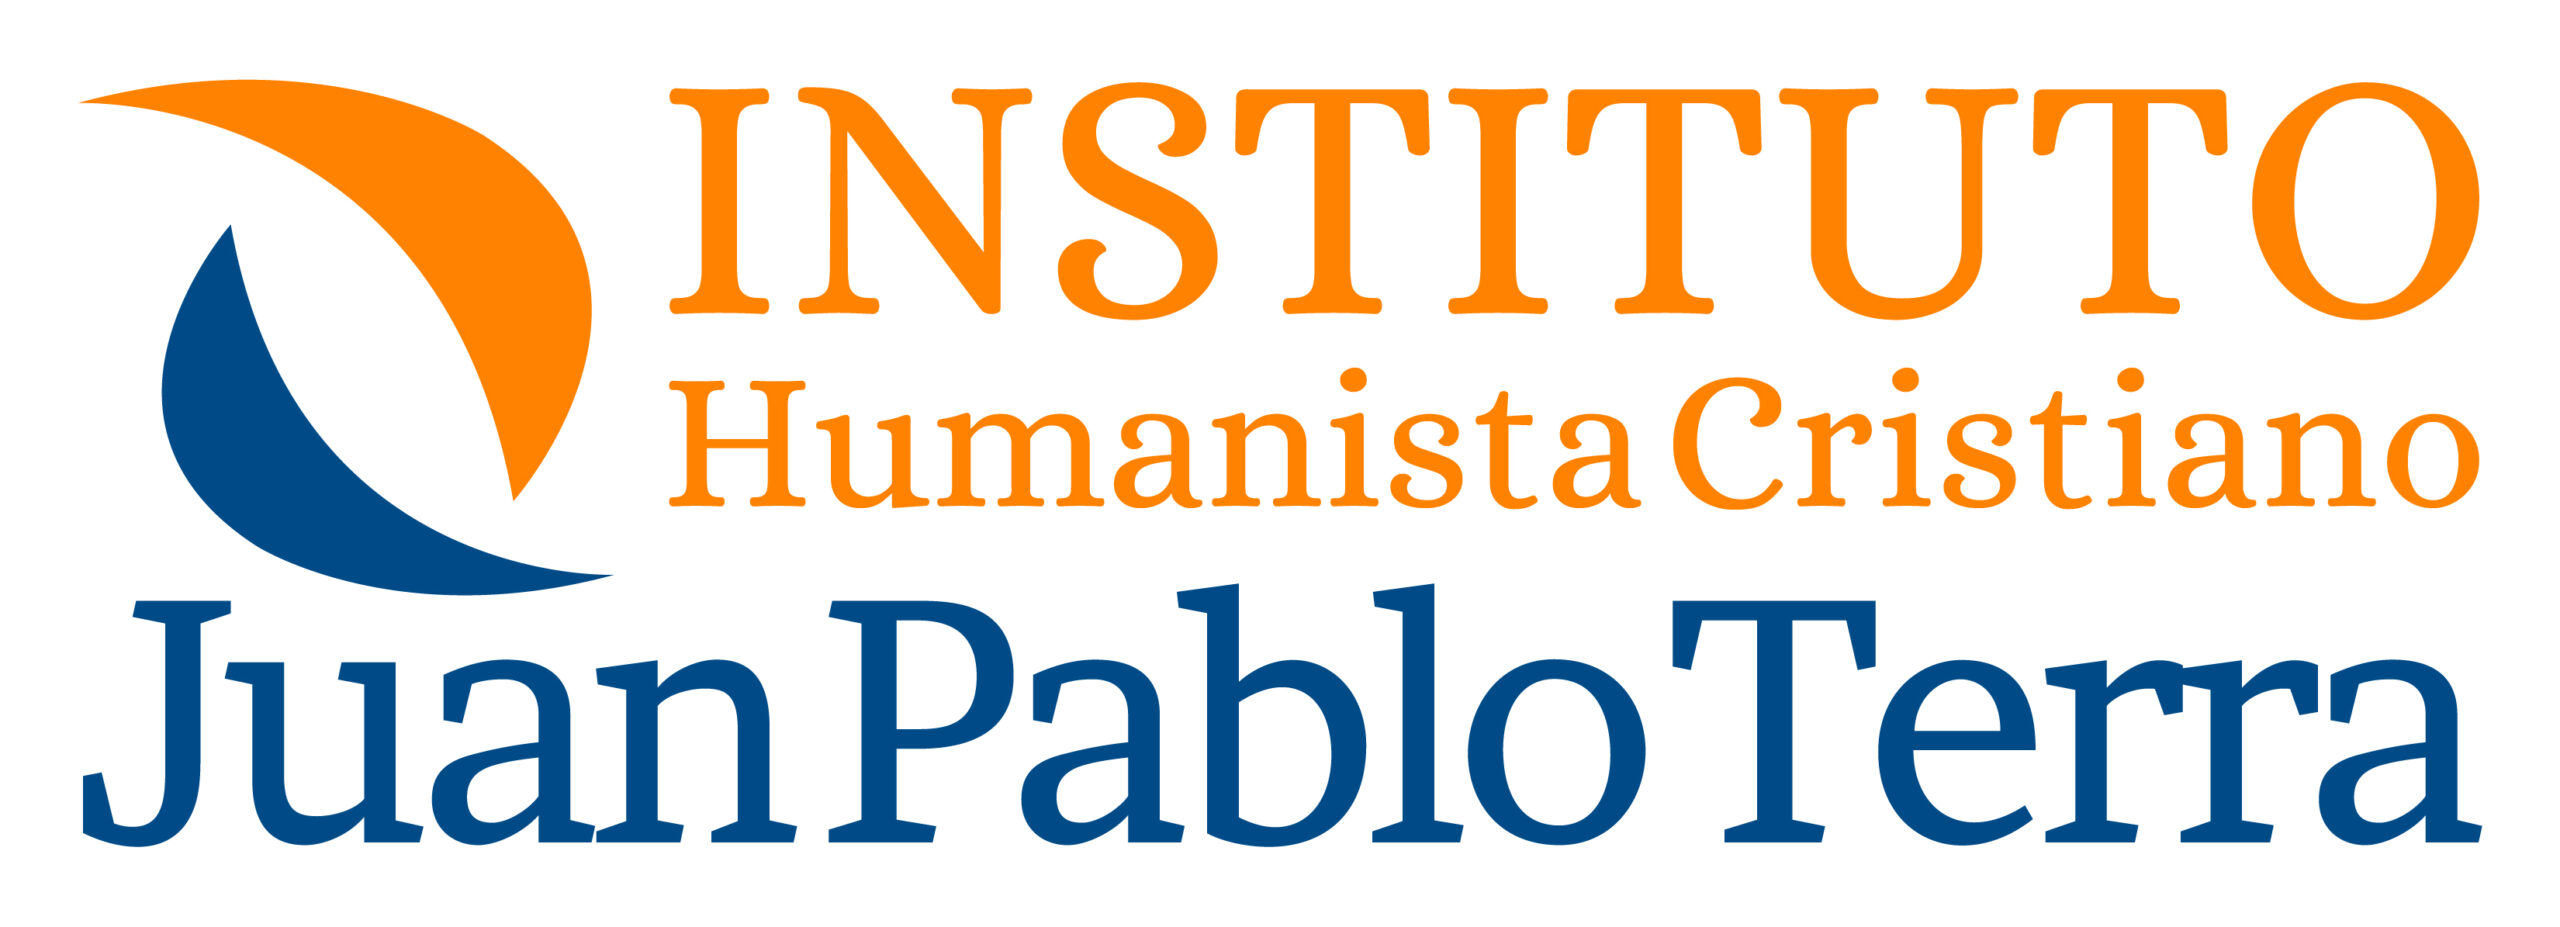 Instituto Juan Pablo Terra